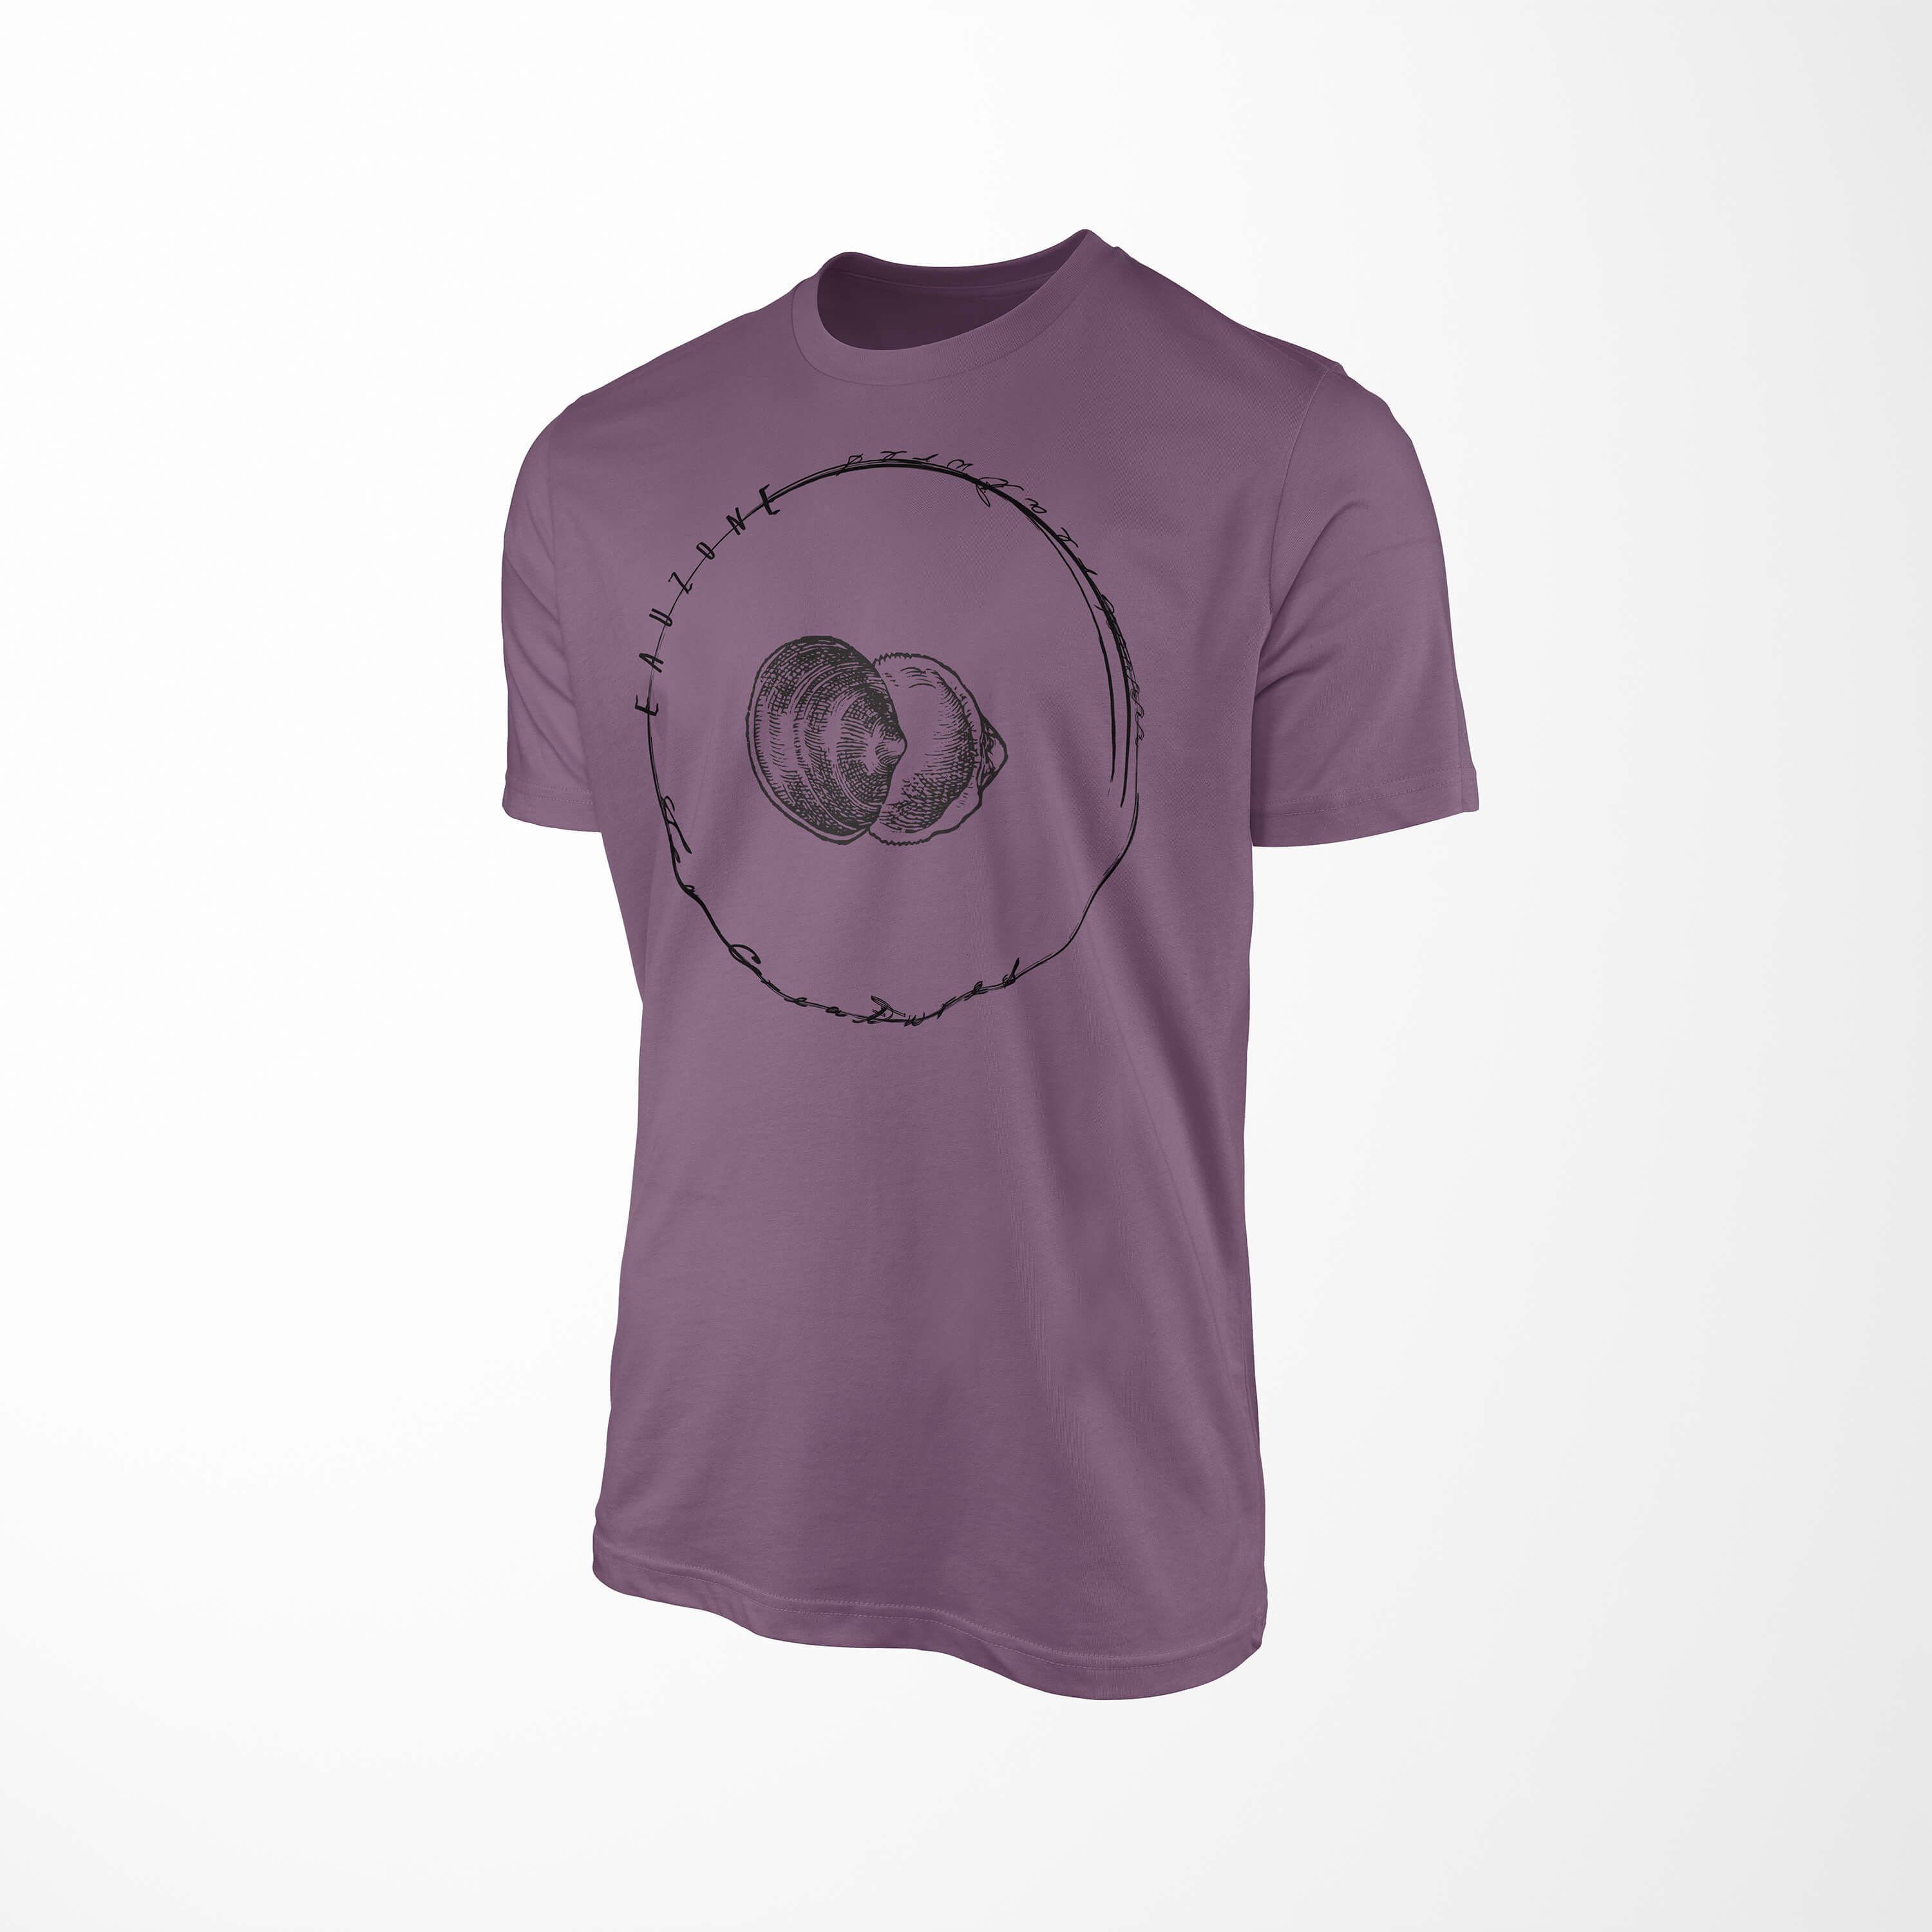 sportlicher Sinus Sea / 010 feine T-Shirt T-Shirt Shiraz Creatures, Struktur - Fische und Tiefsee Schnitt Art Sea Serie: